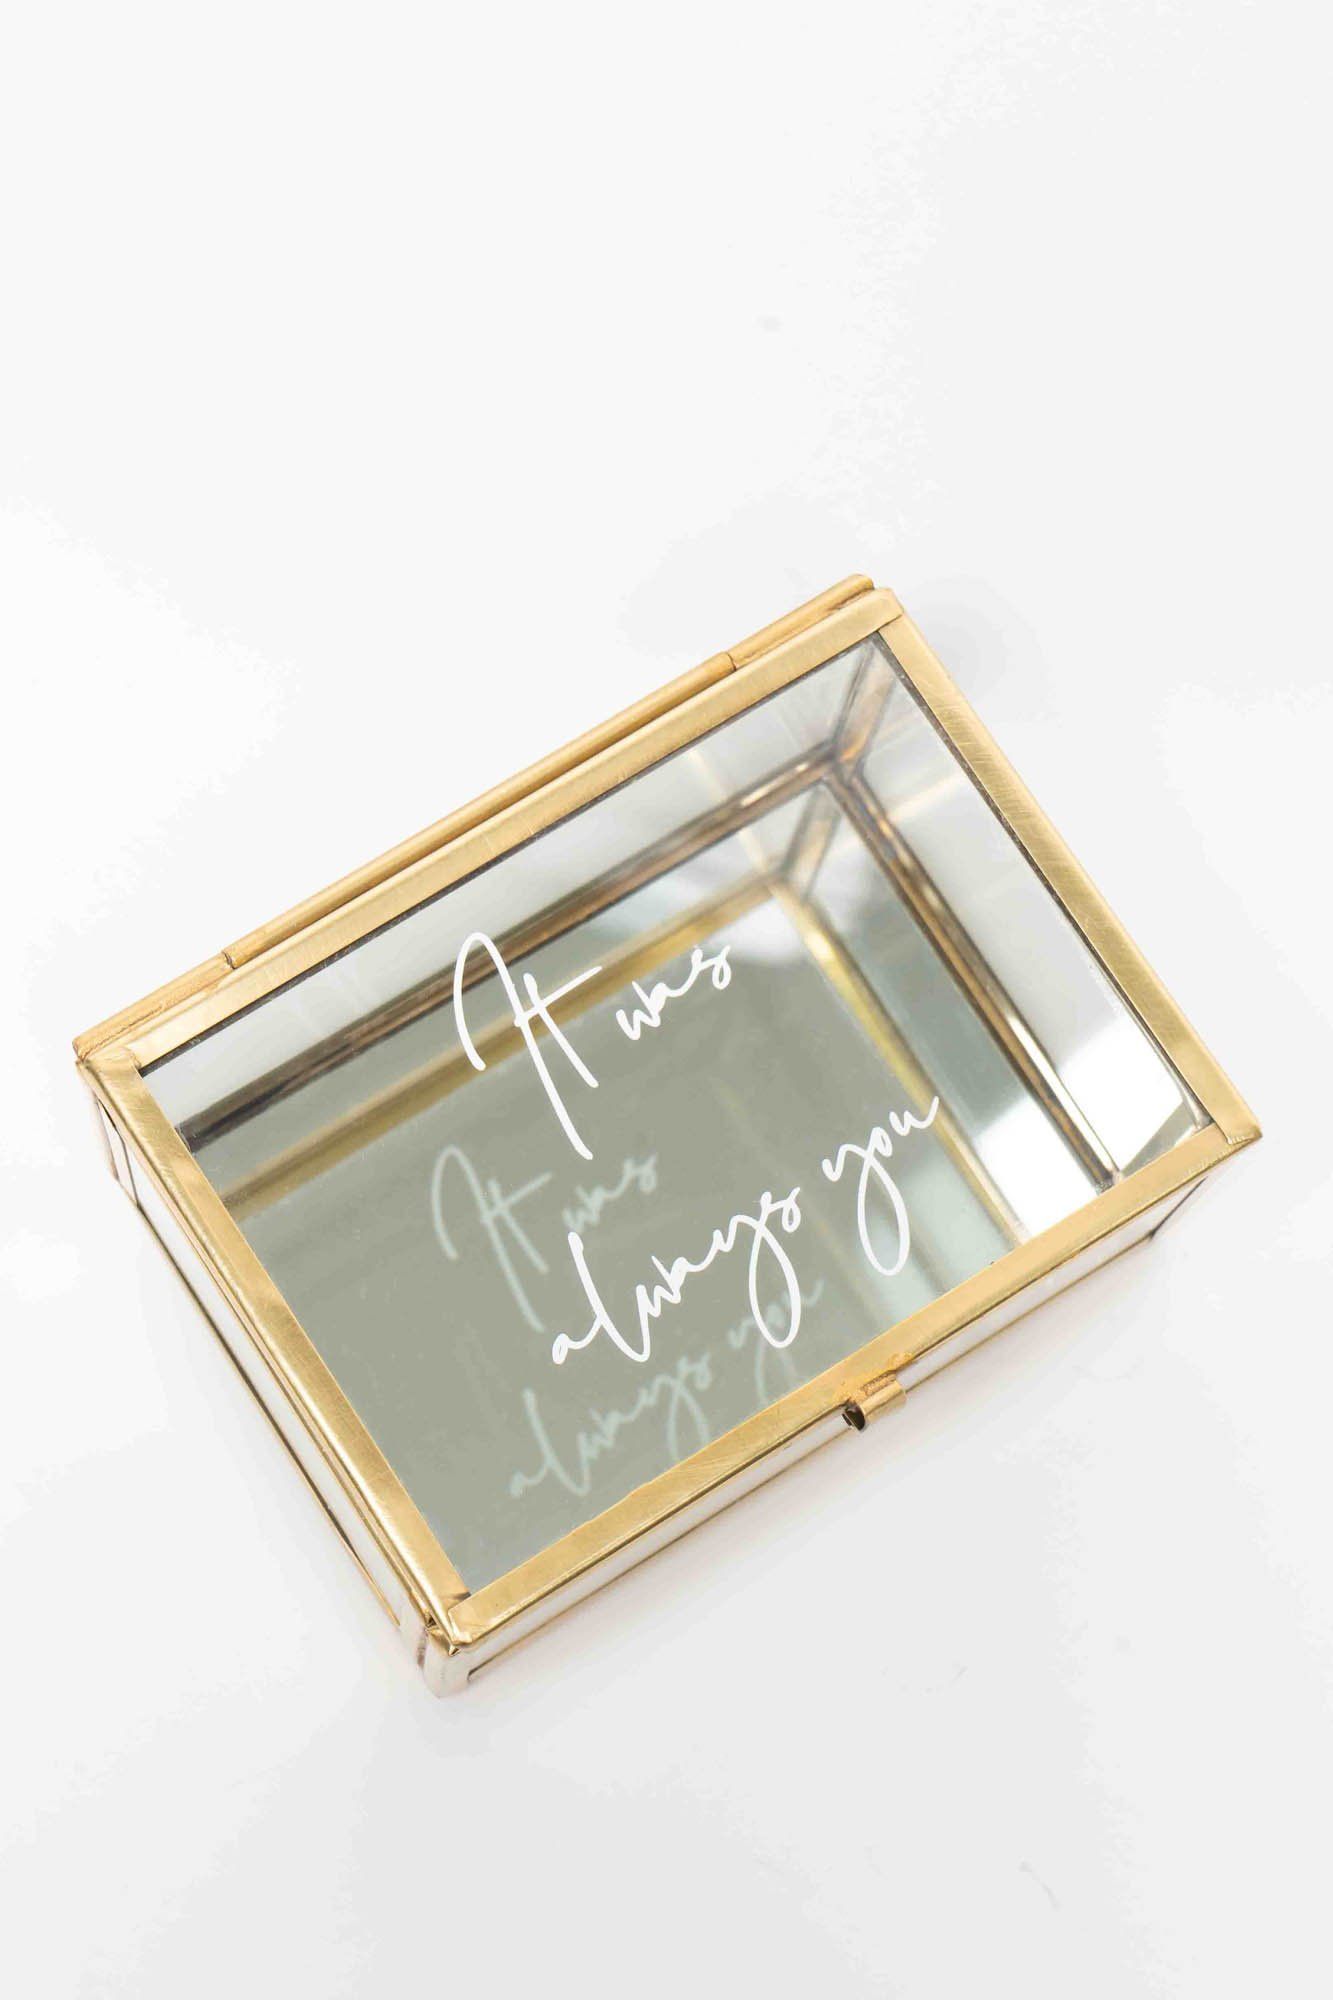 Ringkästchen für die Hochzeit mit Hand Lettering-Schriftzug - "It was always you"